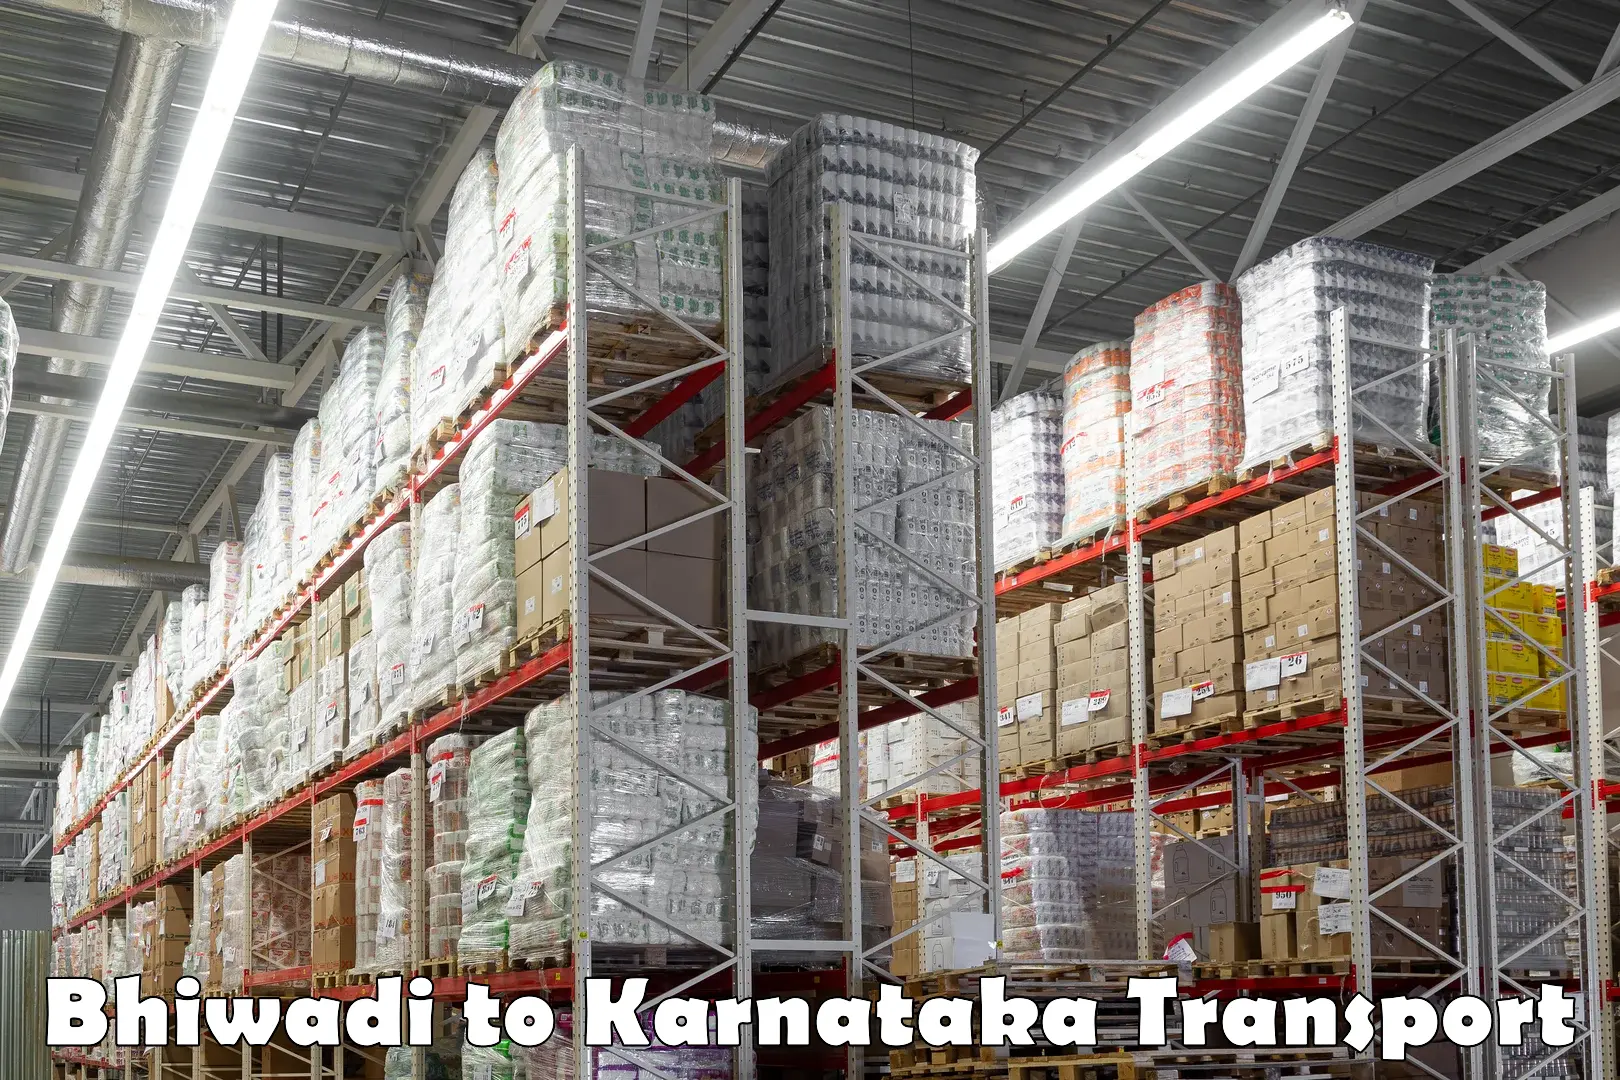 Truck transport companies in India Bhiwadi to Karnataka